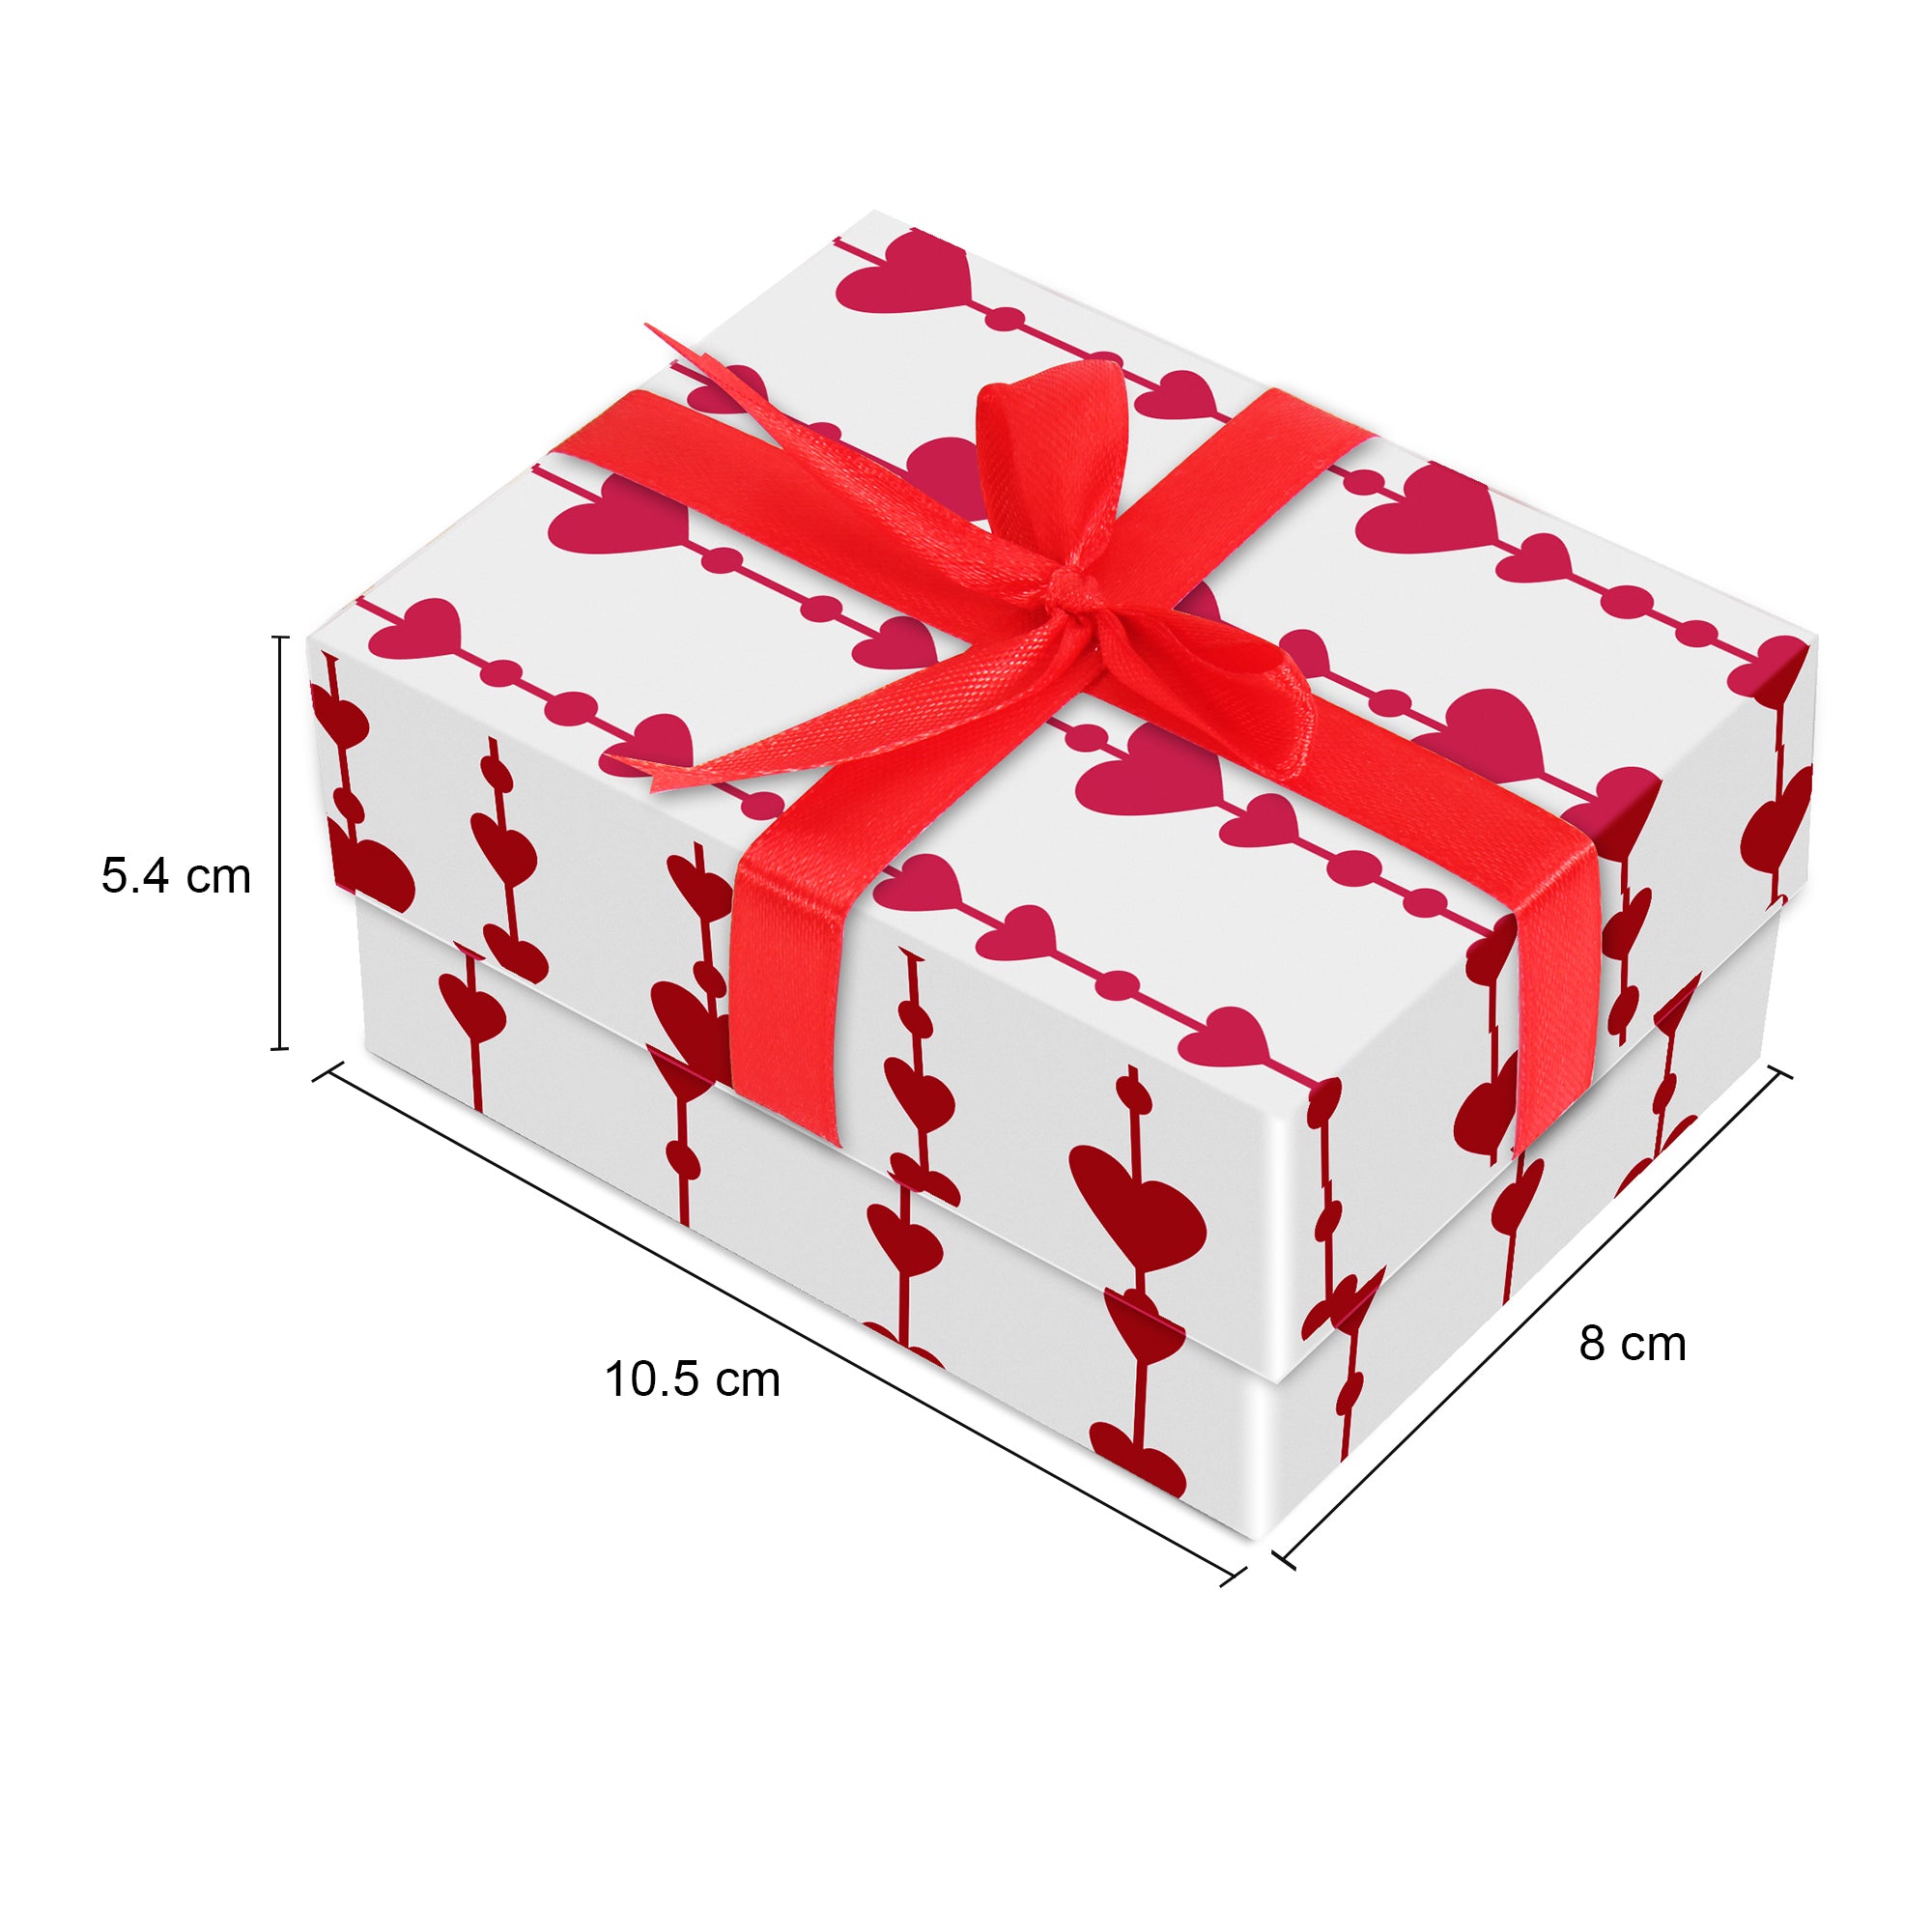 Gift Box Love Unlimited Bow L10.5 X W8 X D5.4(cm)  1pc